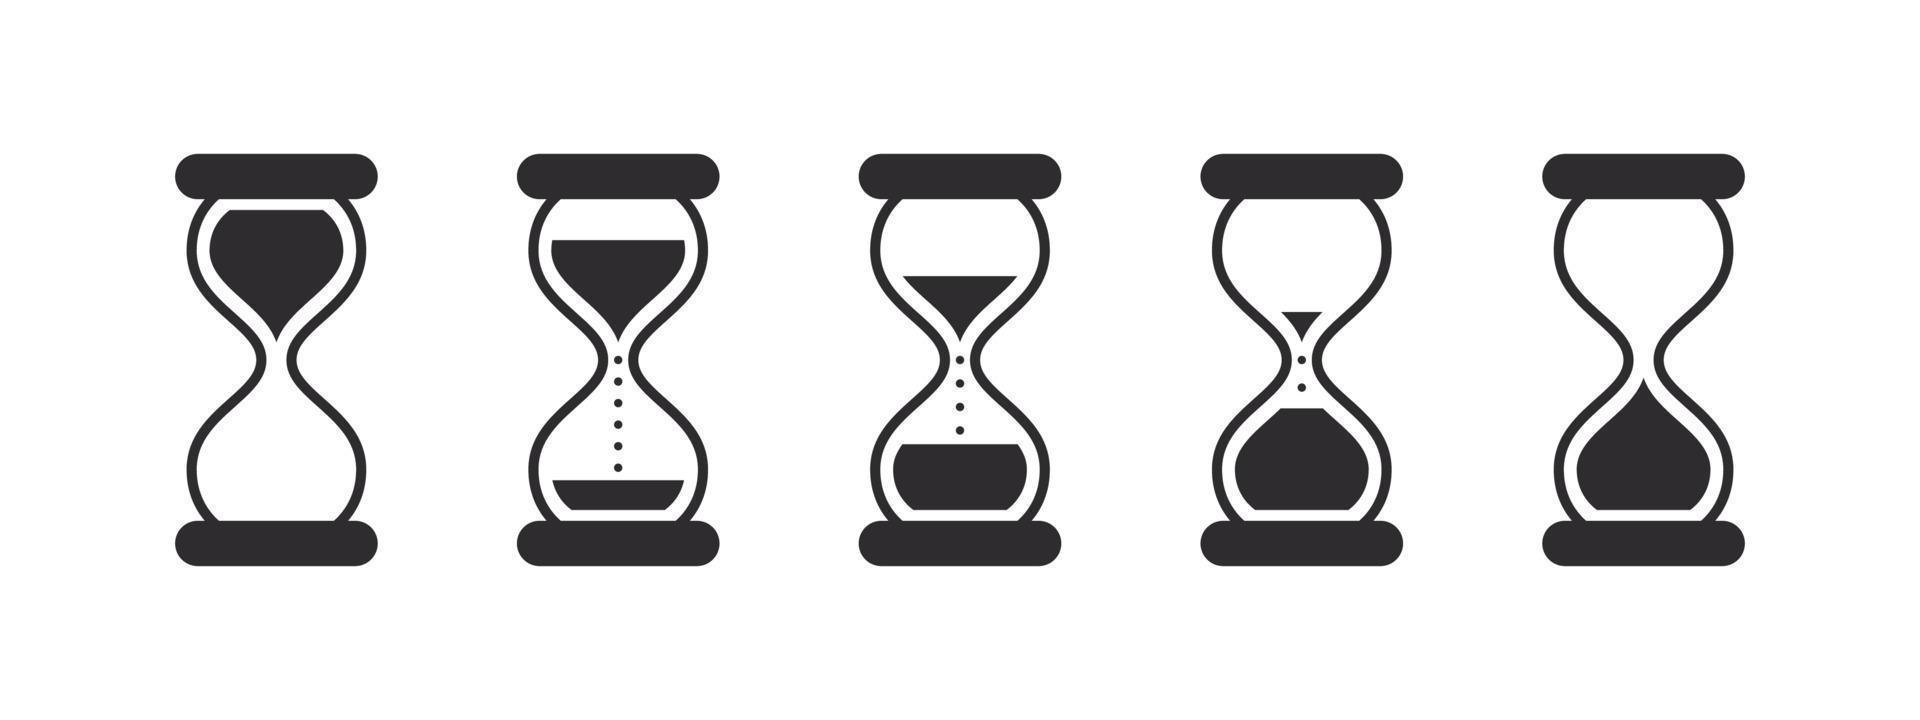 conjunto de iconos de reloj de arena. símbolo de tiempo logotipos de reloj de arena. señal de reloj o temporizador. iconos negros aislados. Imágenes de vectores